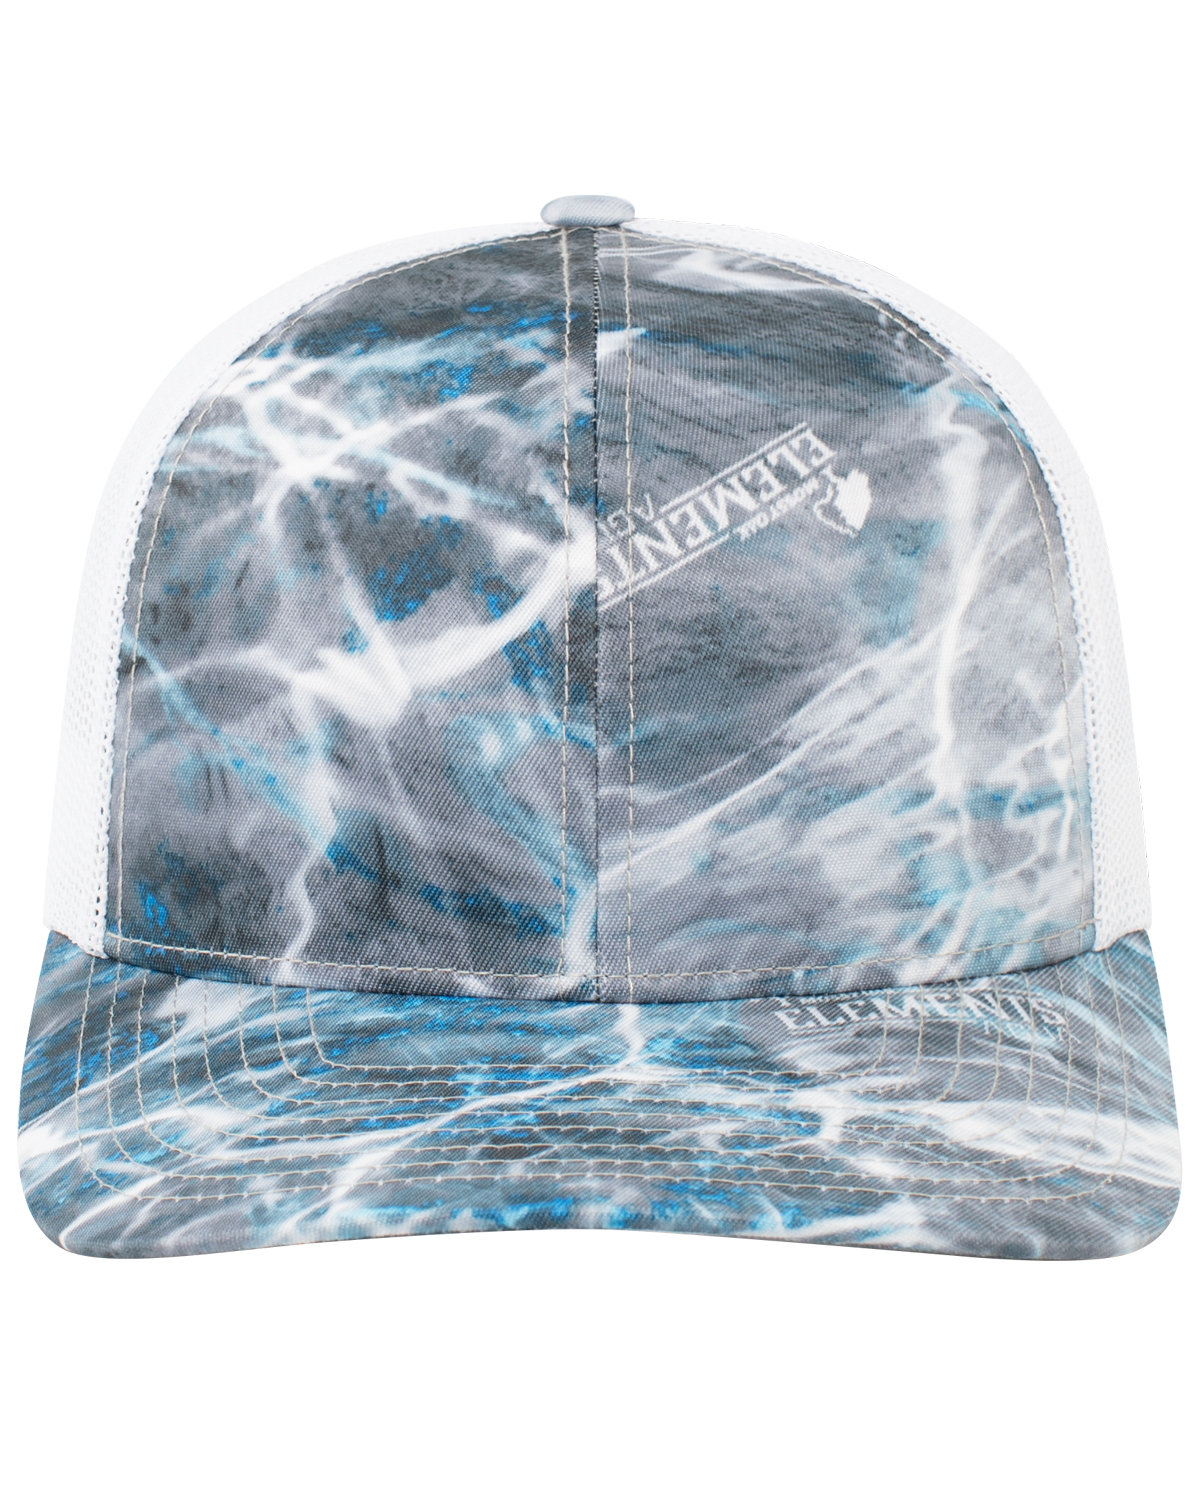 Pacific Headwear Snapback Trucker Hat steelhead/ white 